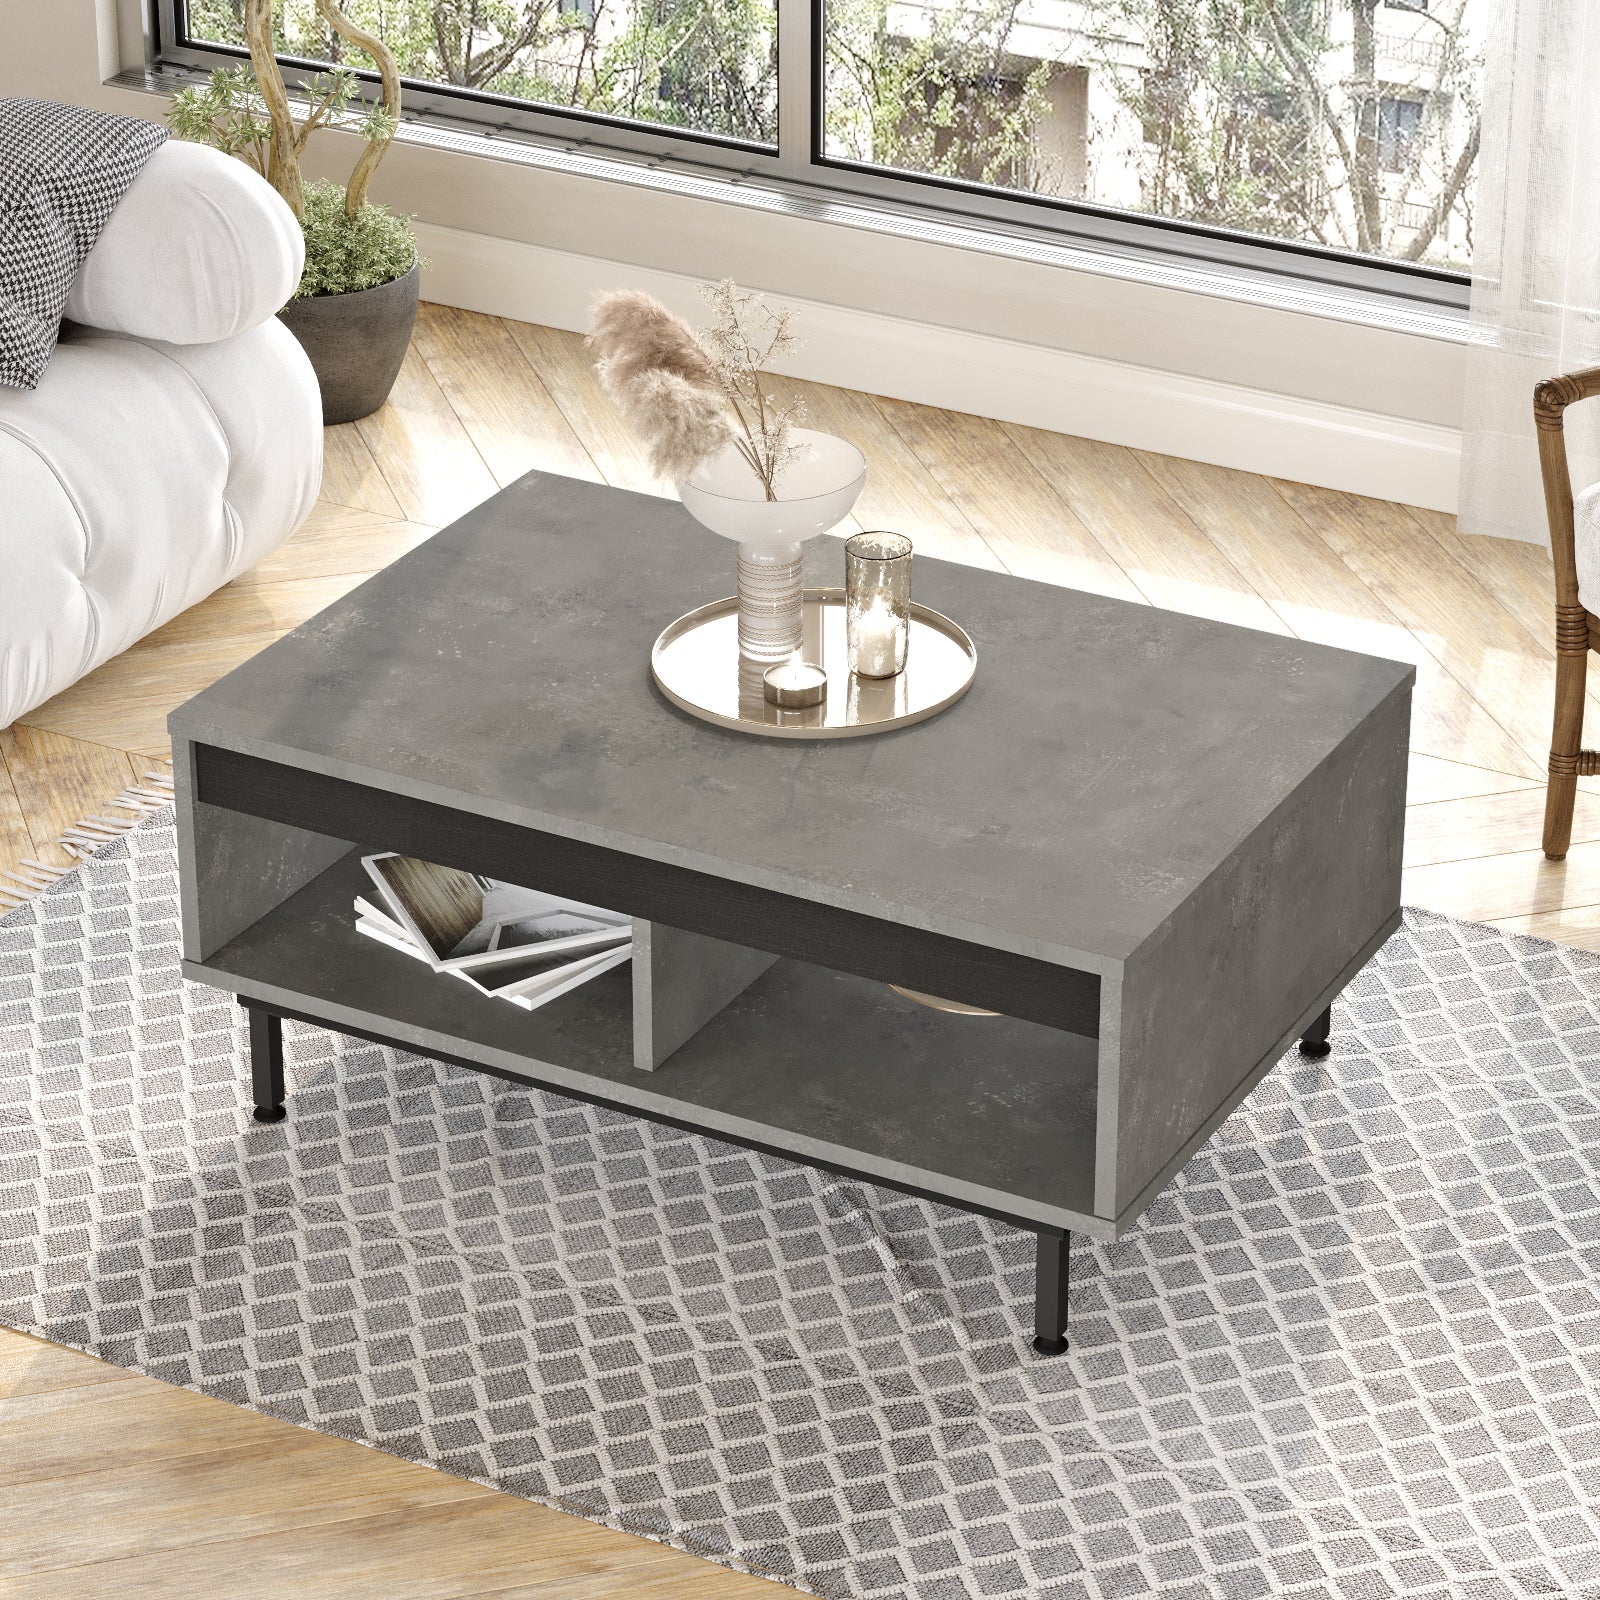 bois gris-Table basse 'DIONE' avec des accessoires de décoration-intégrée dans un salon lumineux et accueillant.